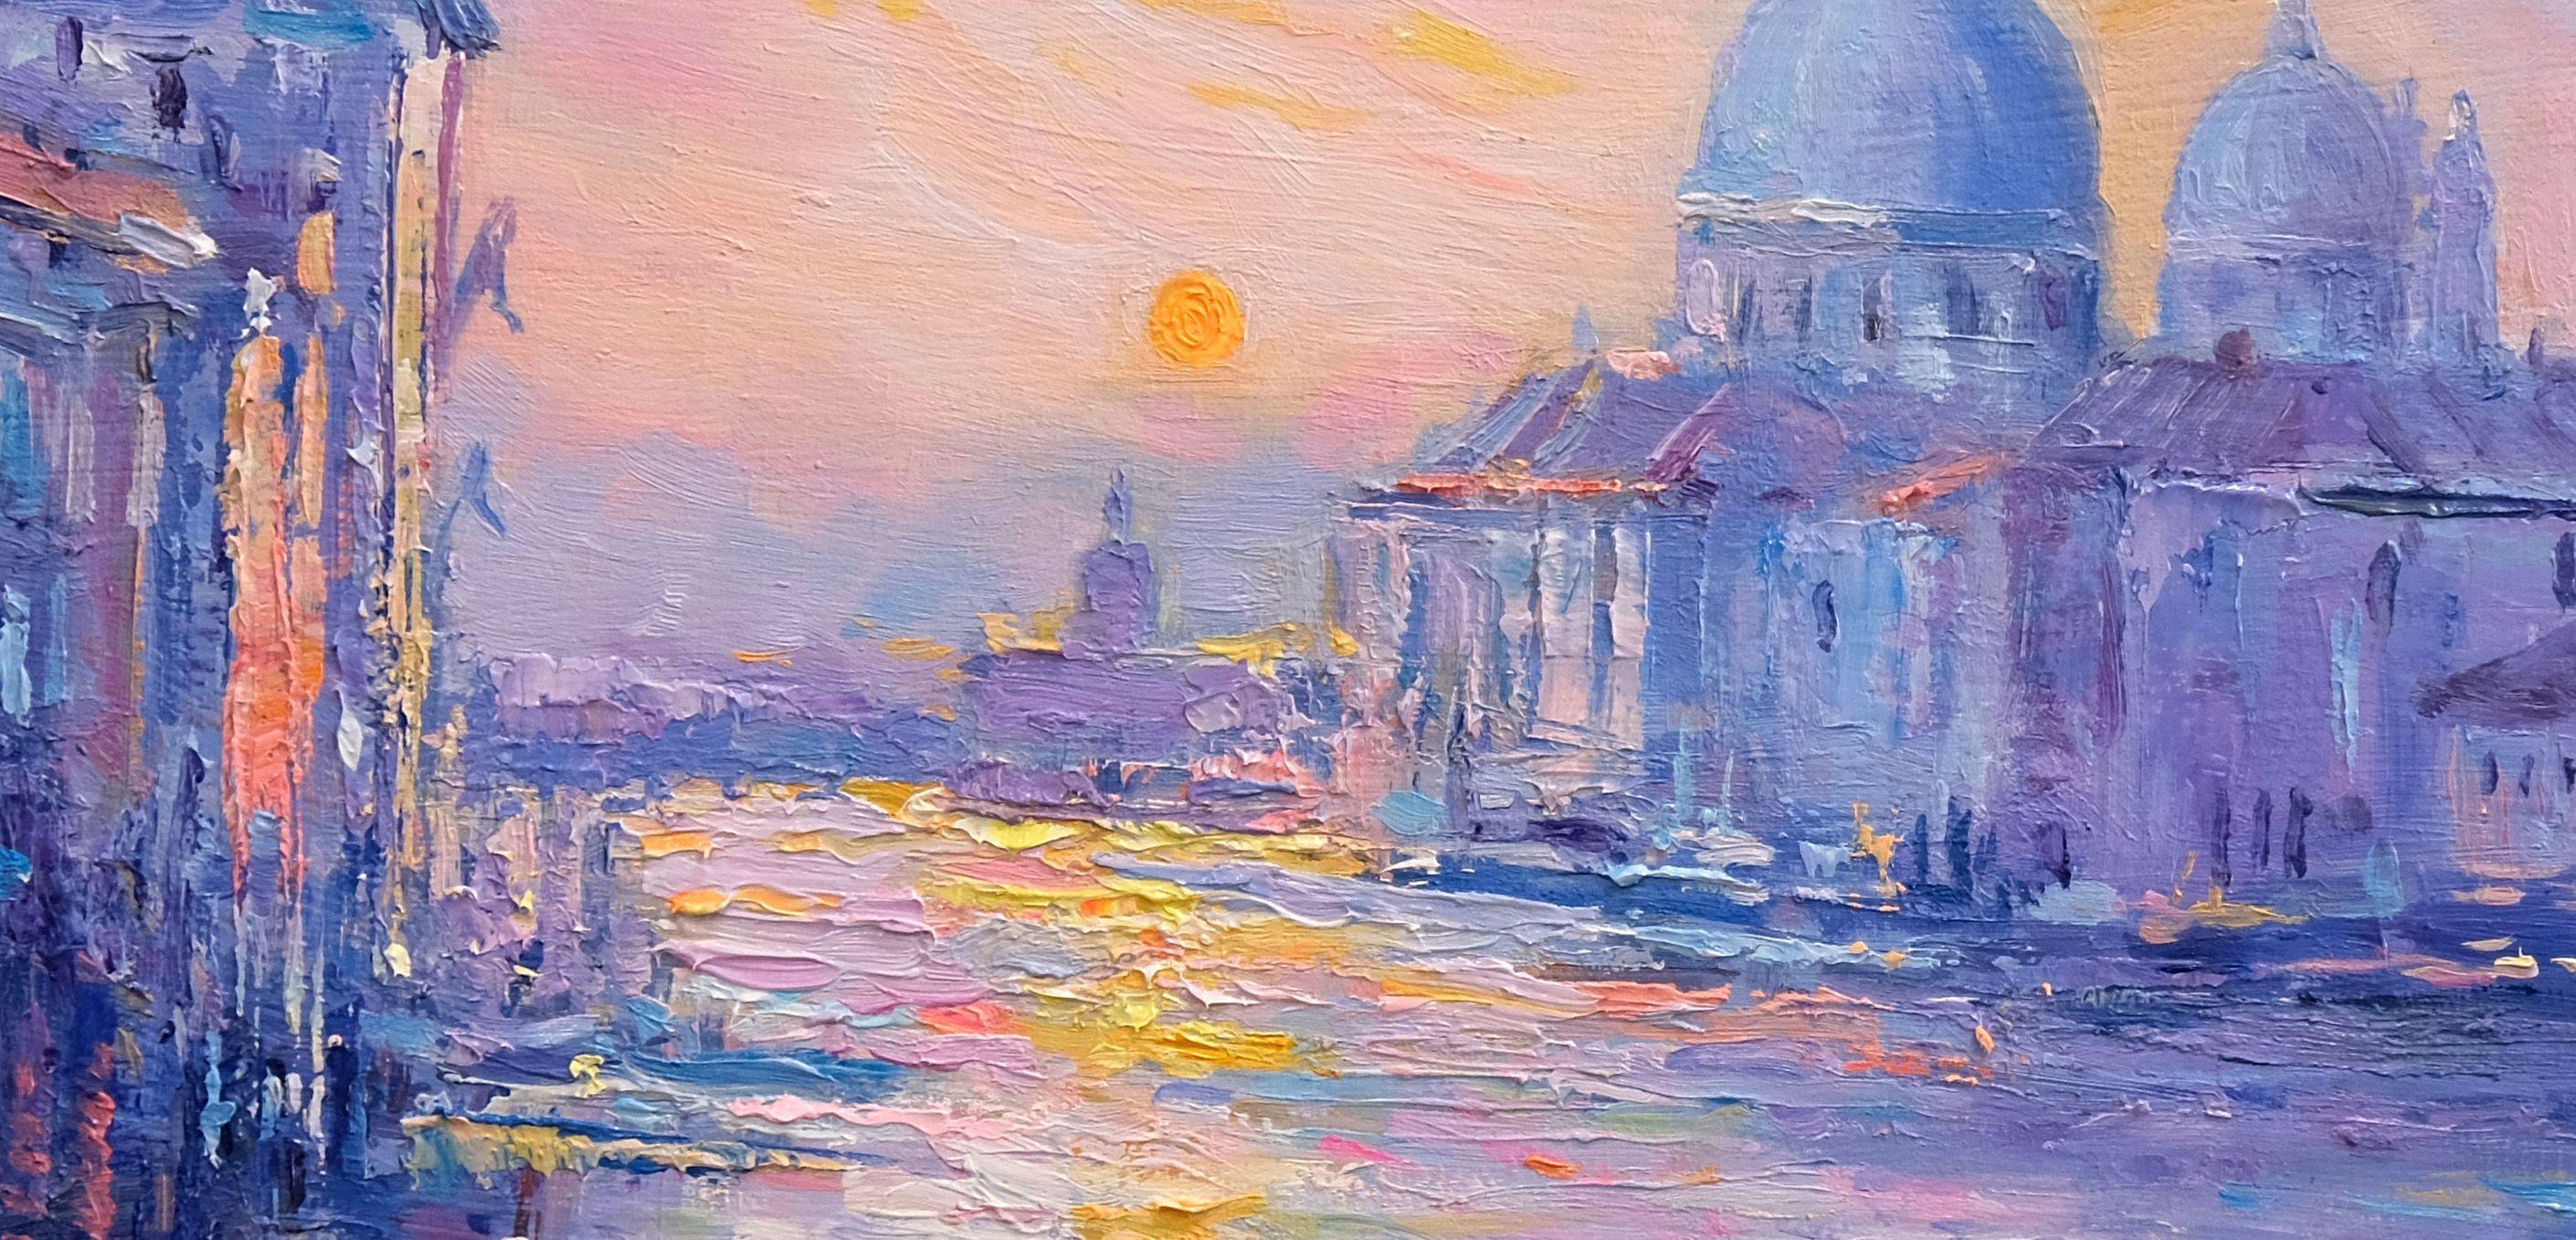 Peinture à l'huile originale d'une vue romantique de Venise.  Une peinture impressionniste inspirée par les couleurs et les lumières d'un coucher de soleil. Un tableau fascinant dans les détails et dans l'ensemble de sa composition.  Il a été peint